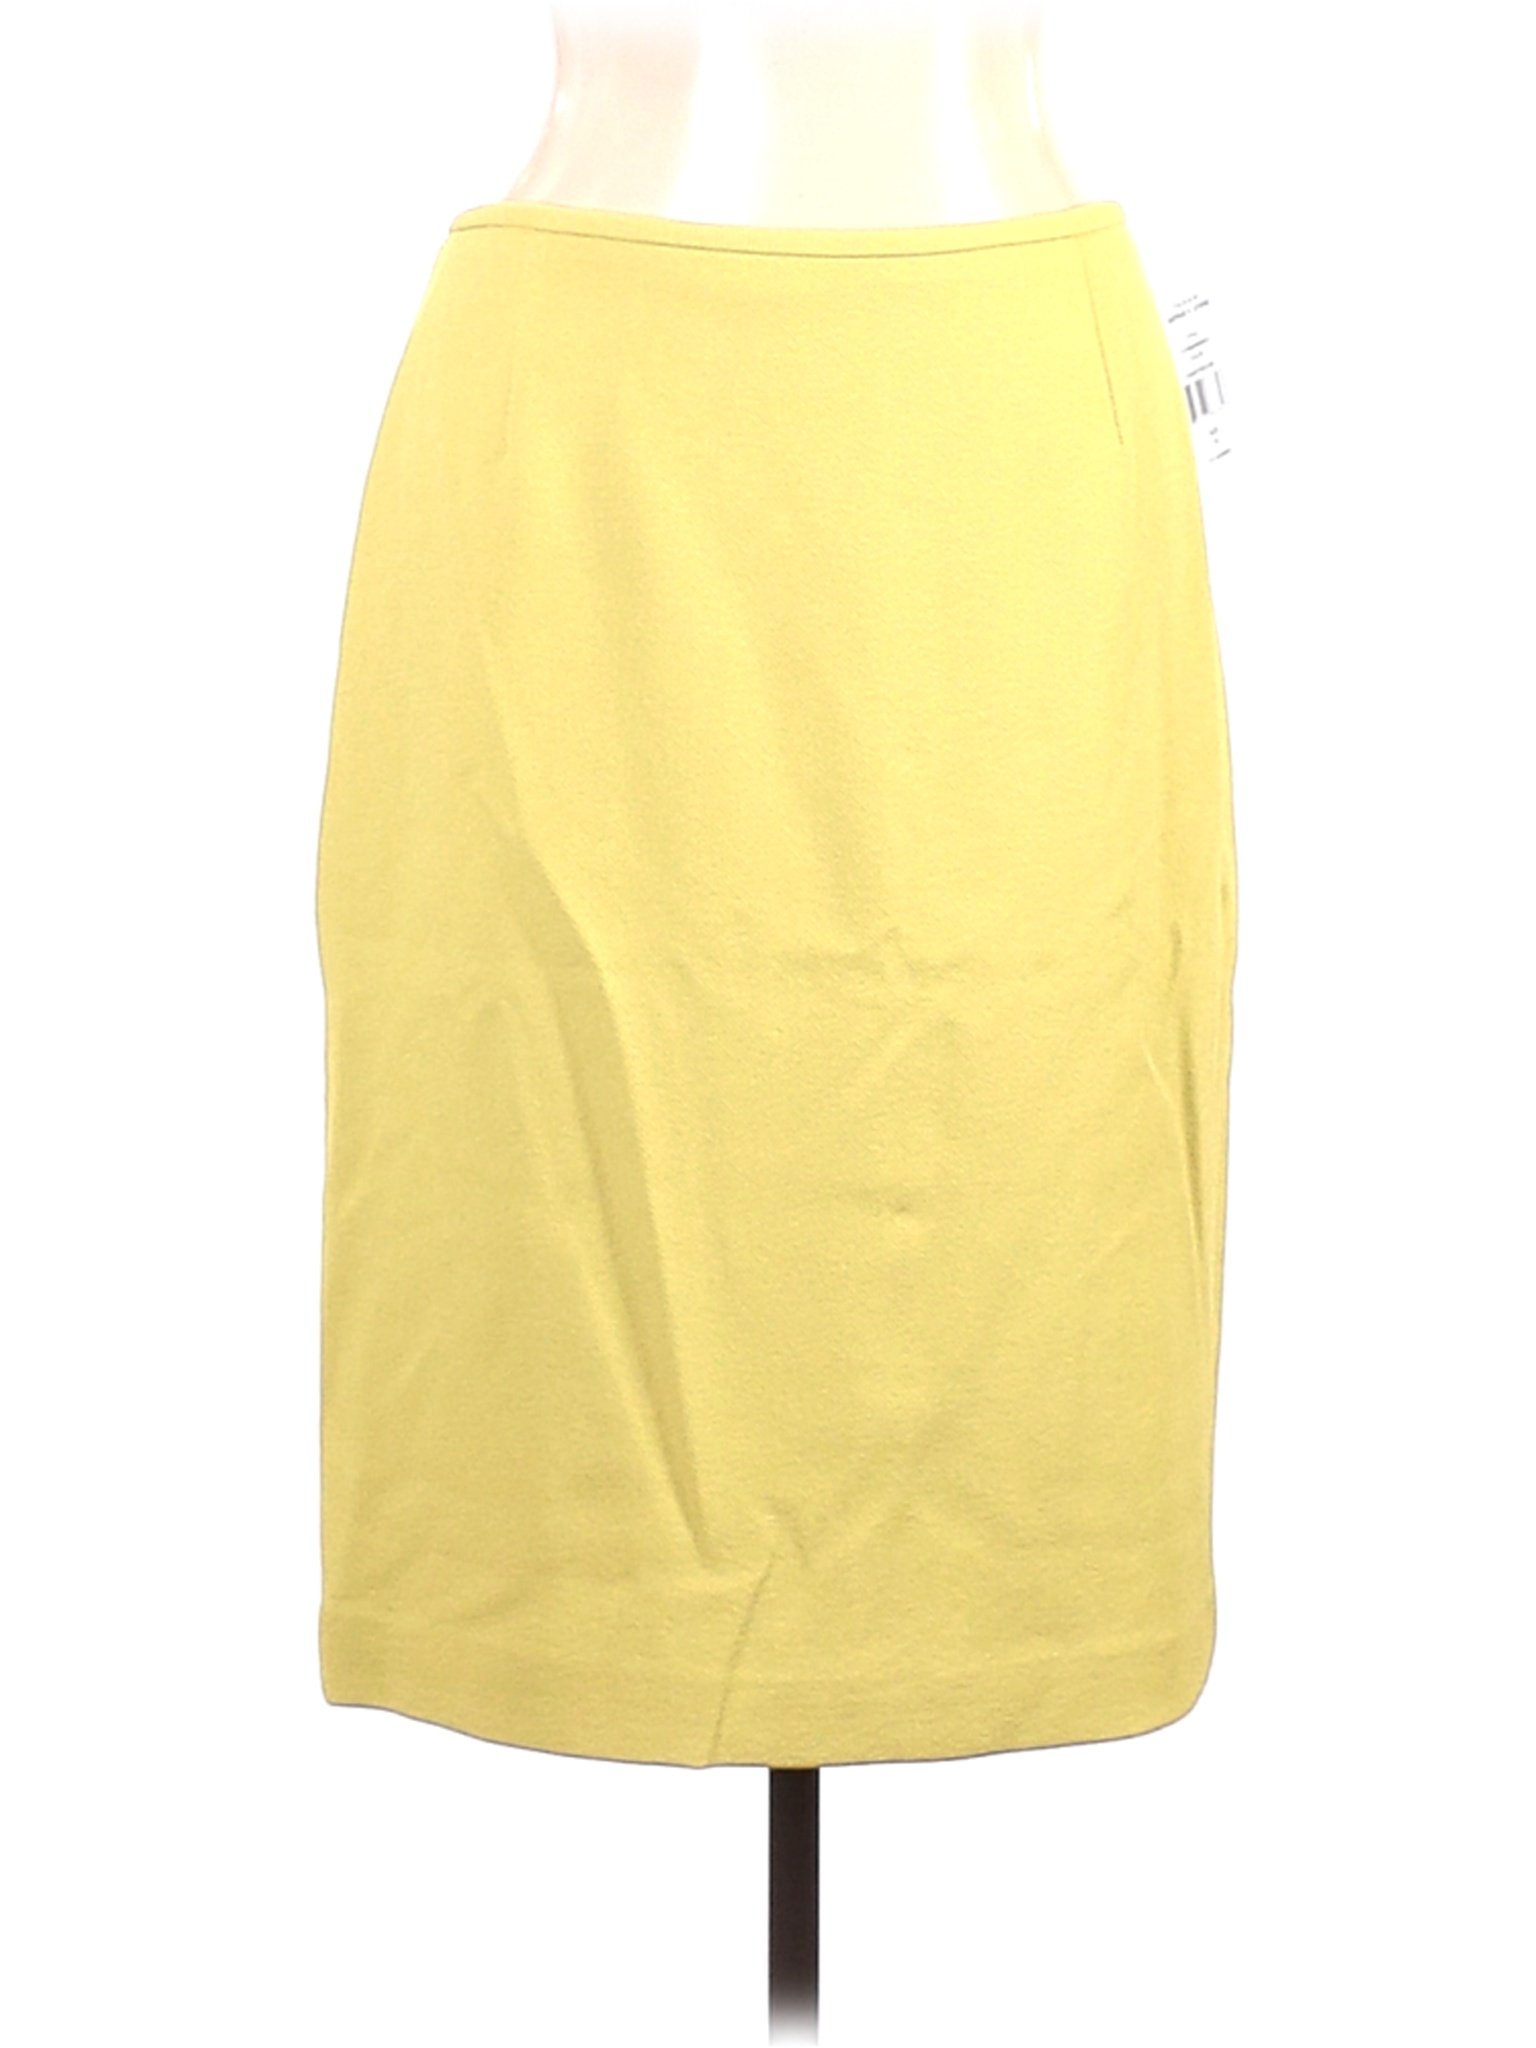 NWT Tahari Women Yellow Casual Skirt 10 | eBay